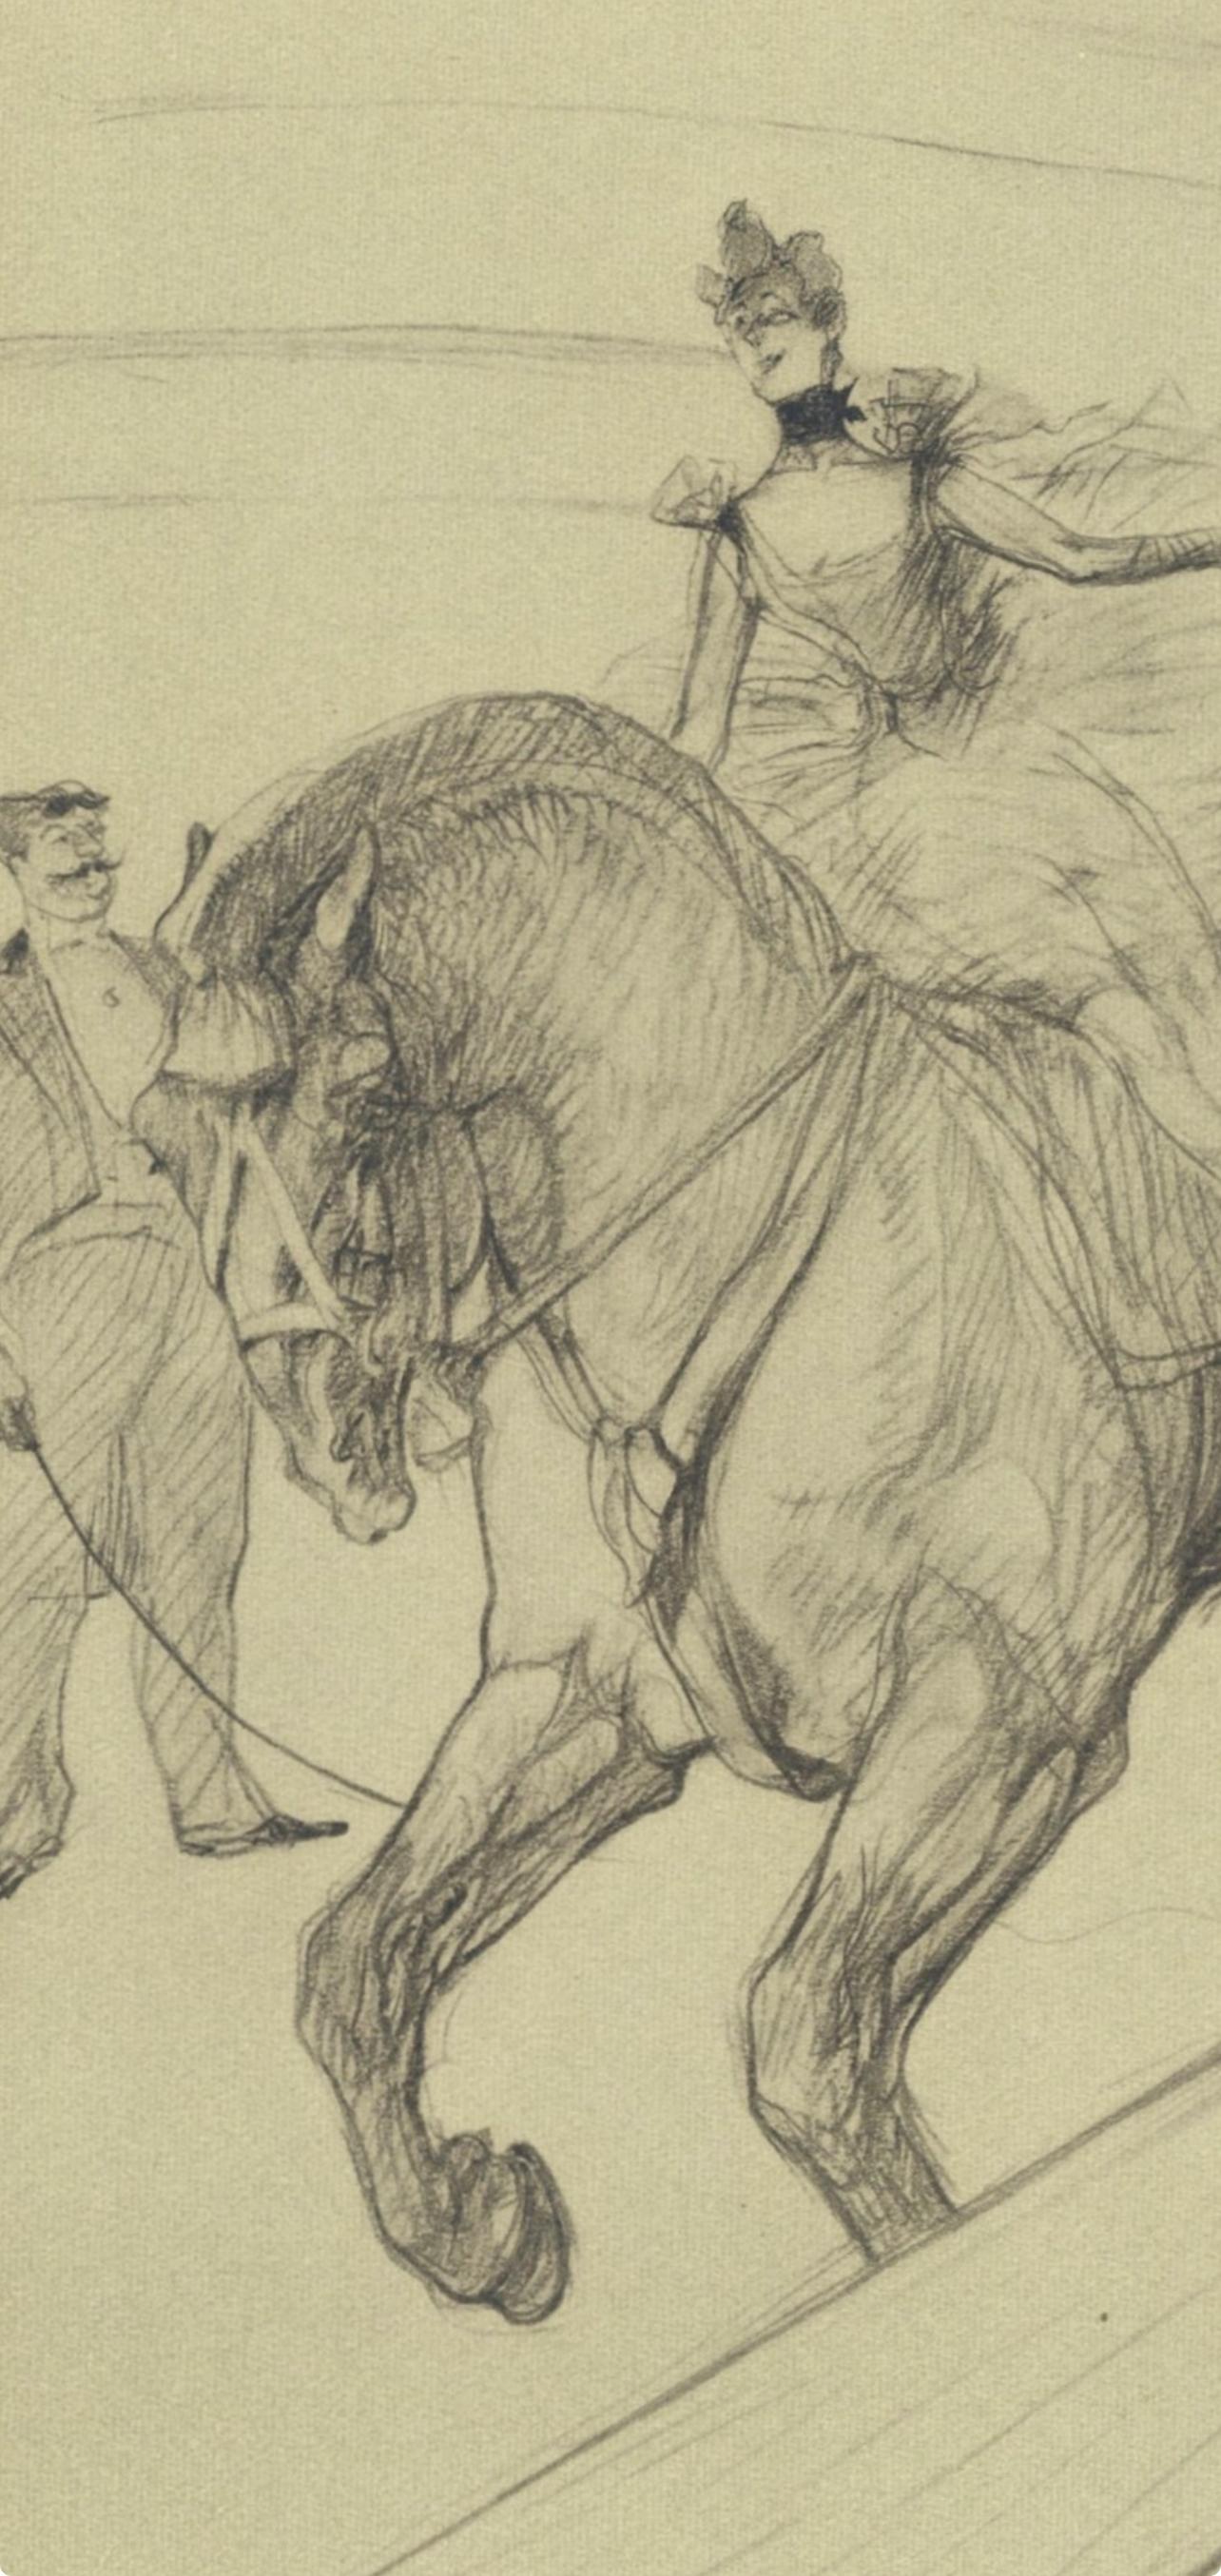 Toulouse-Lautrec, Travail ohne selle, Der Zirkus von Toulouse-Lautrec (nach) – Print von Henri de Toulouse-Lautrec